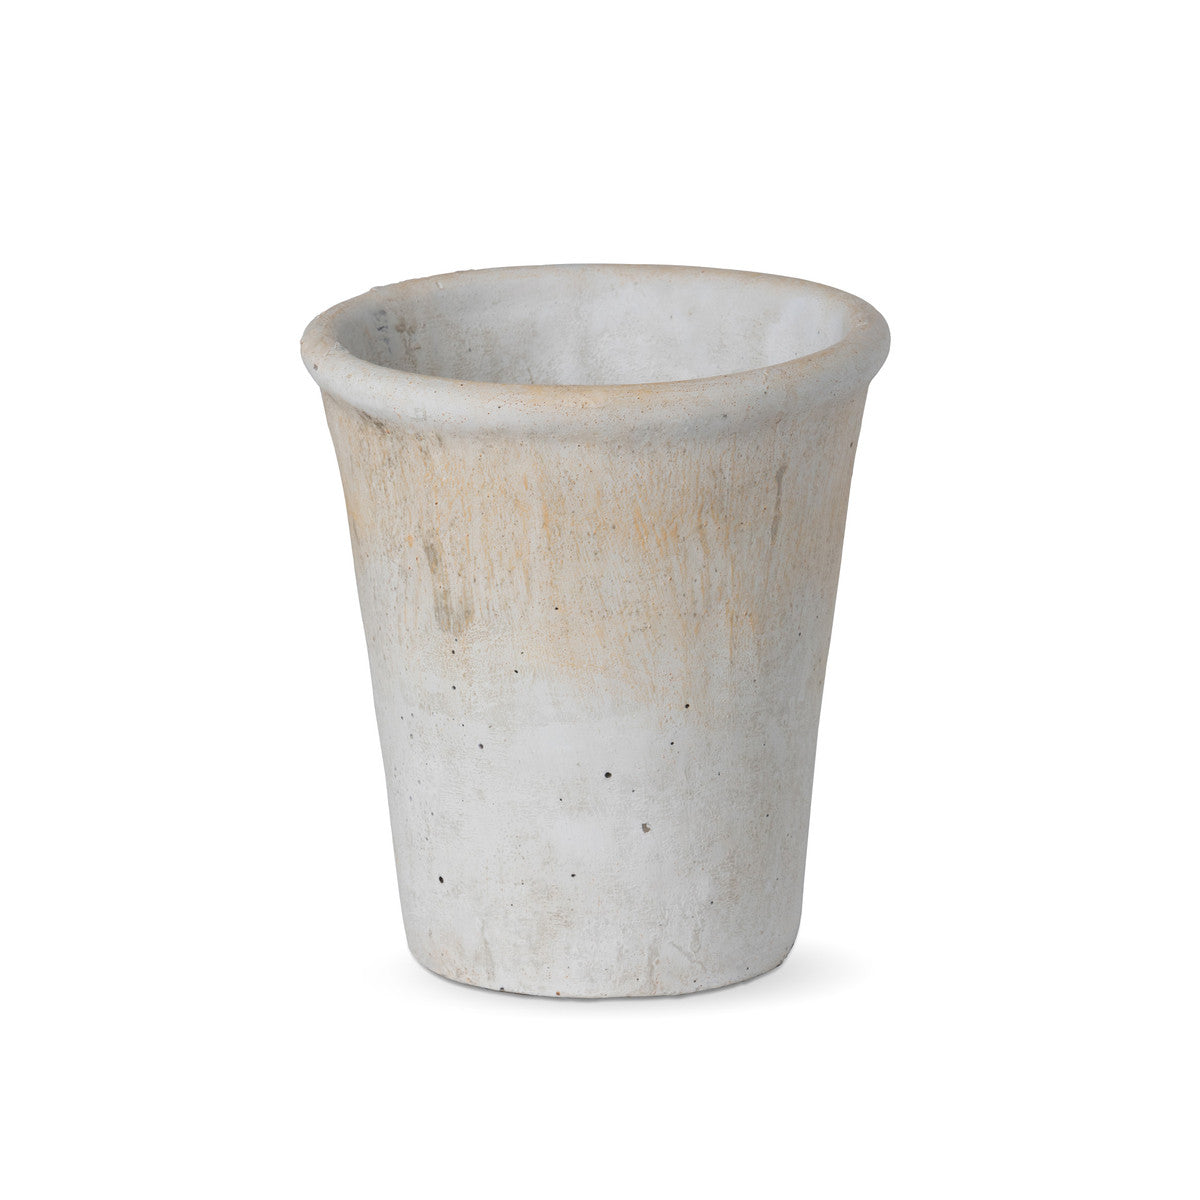 Distressed Concrete Pot - Medium